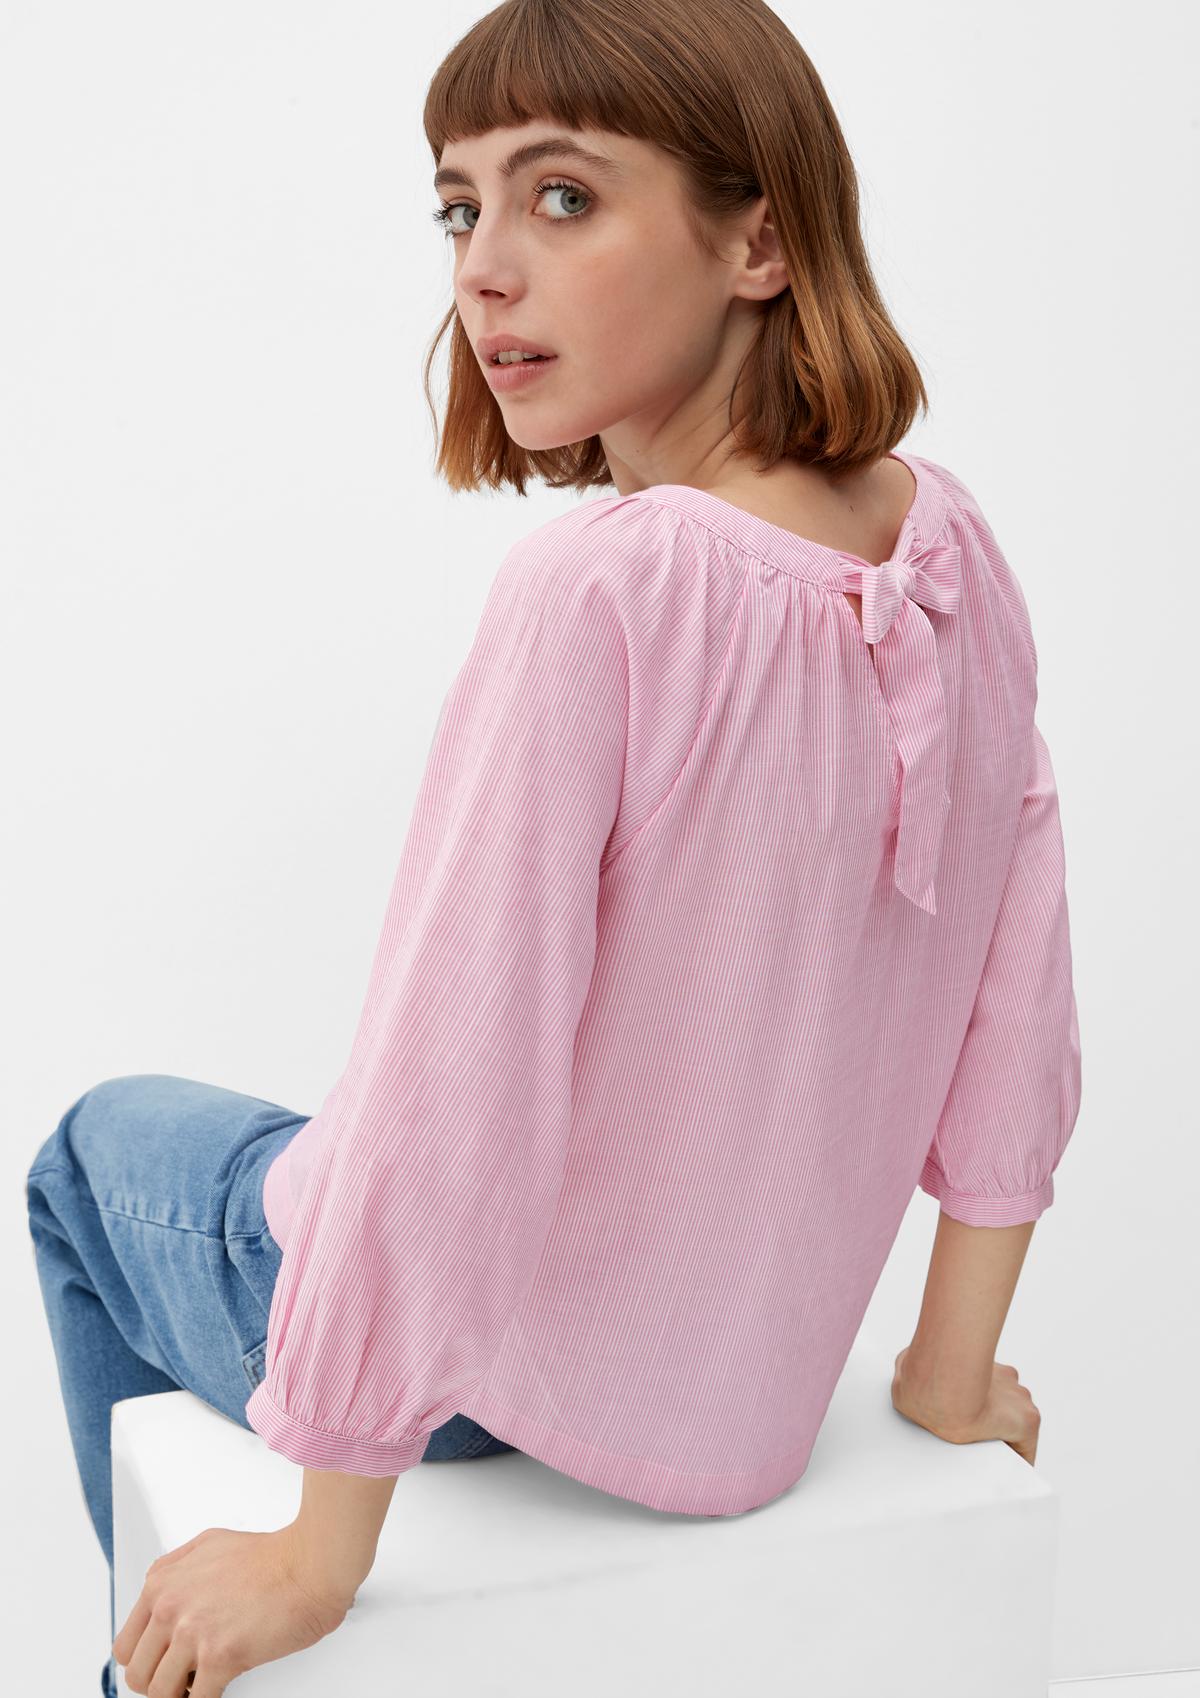 s. Olive r Camiseta rosa 